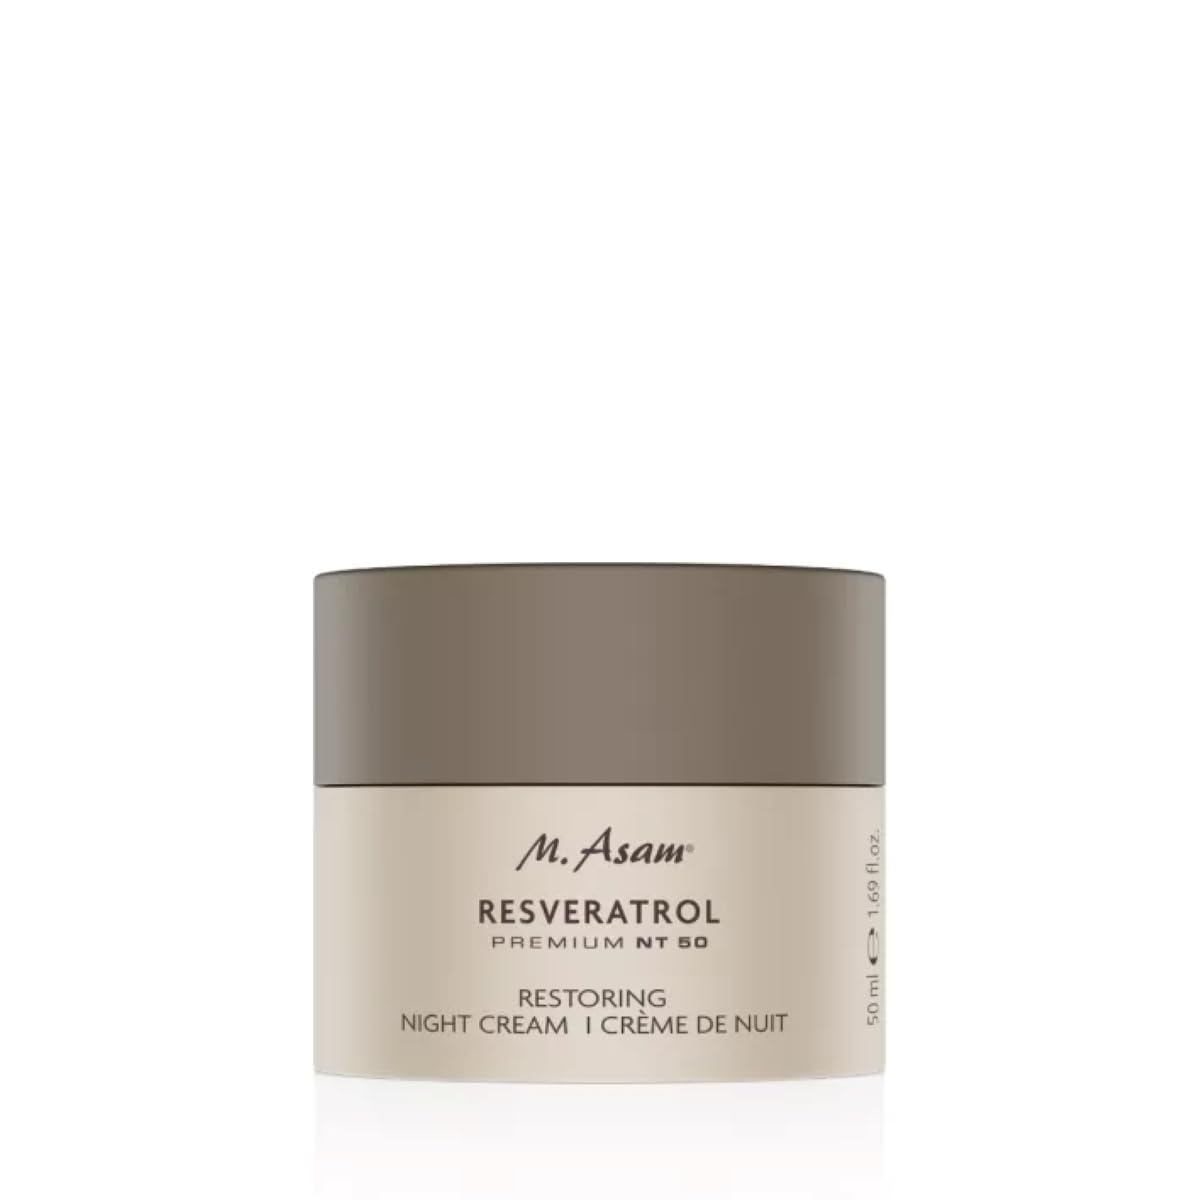 M. Asam Resveratrol Premium NT50 Restoring Night Cream (50ml) – reichhaltige Nachtcreme regeneriert, strafft & glättet mit Soforteffekt über Nacht, Gesichtscreme mit Hyaluronsäure & Sheabutter